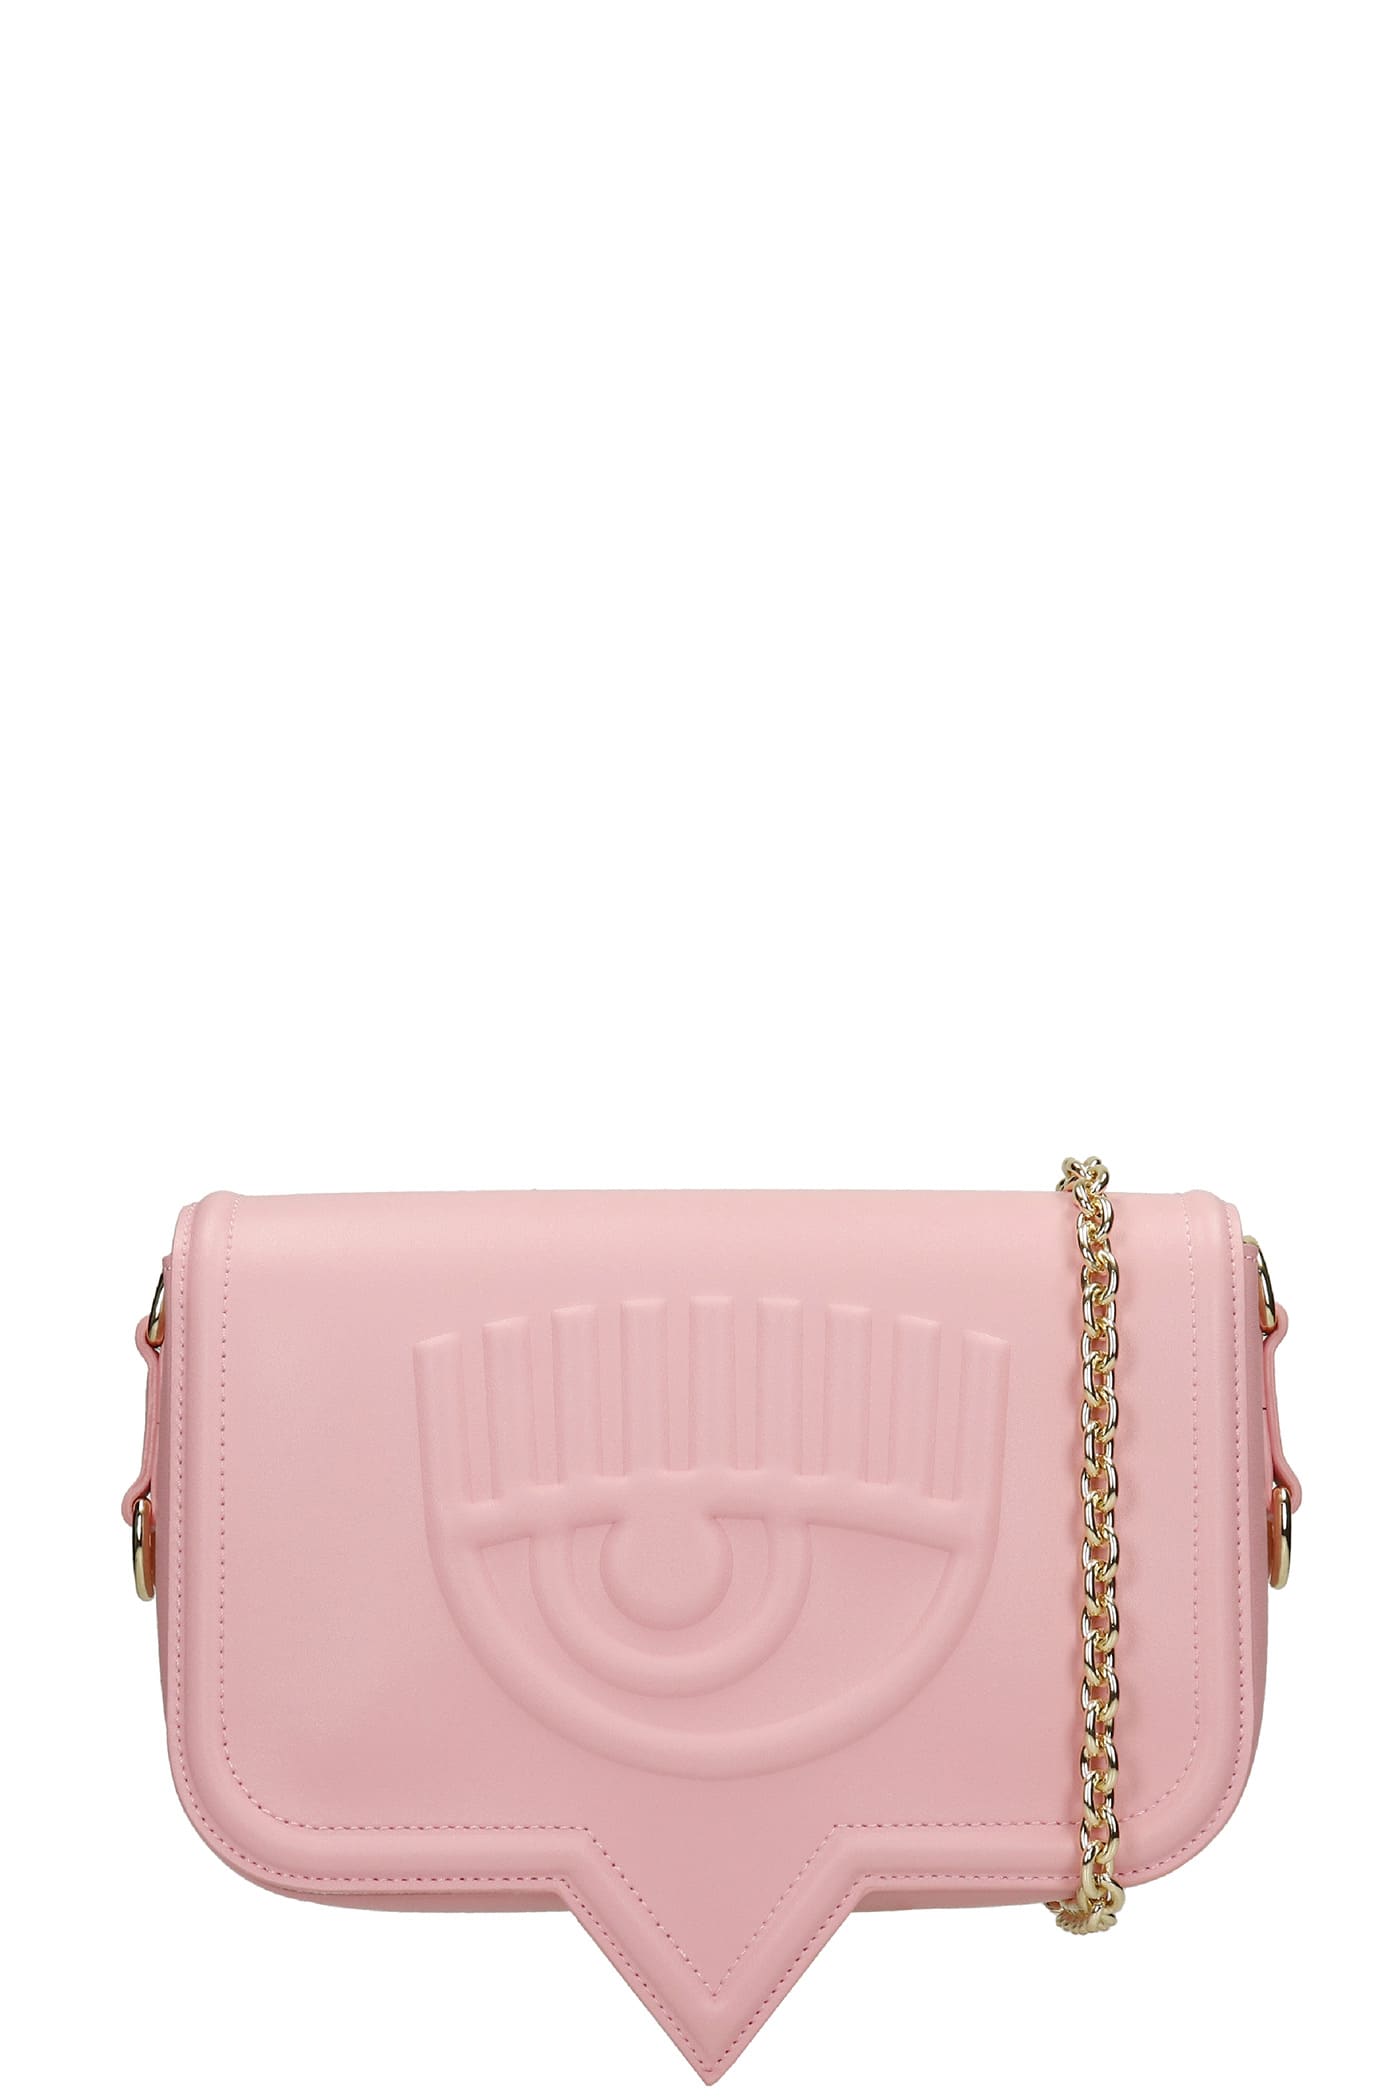 Chiara Ferragni Shoulder Bag In Rose-pink Leather